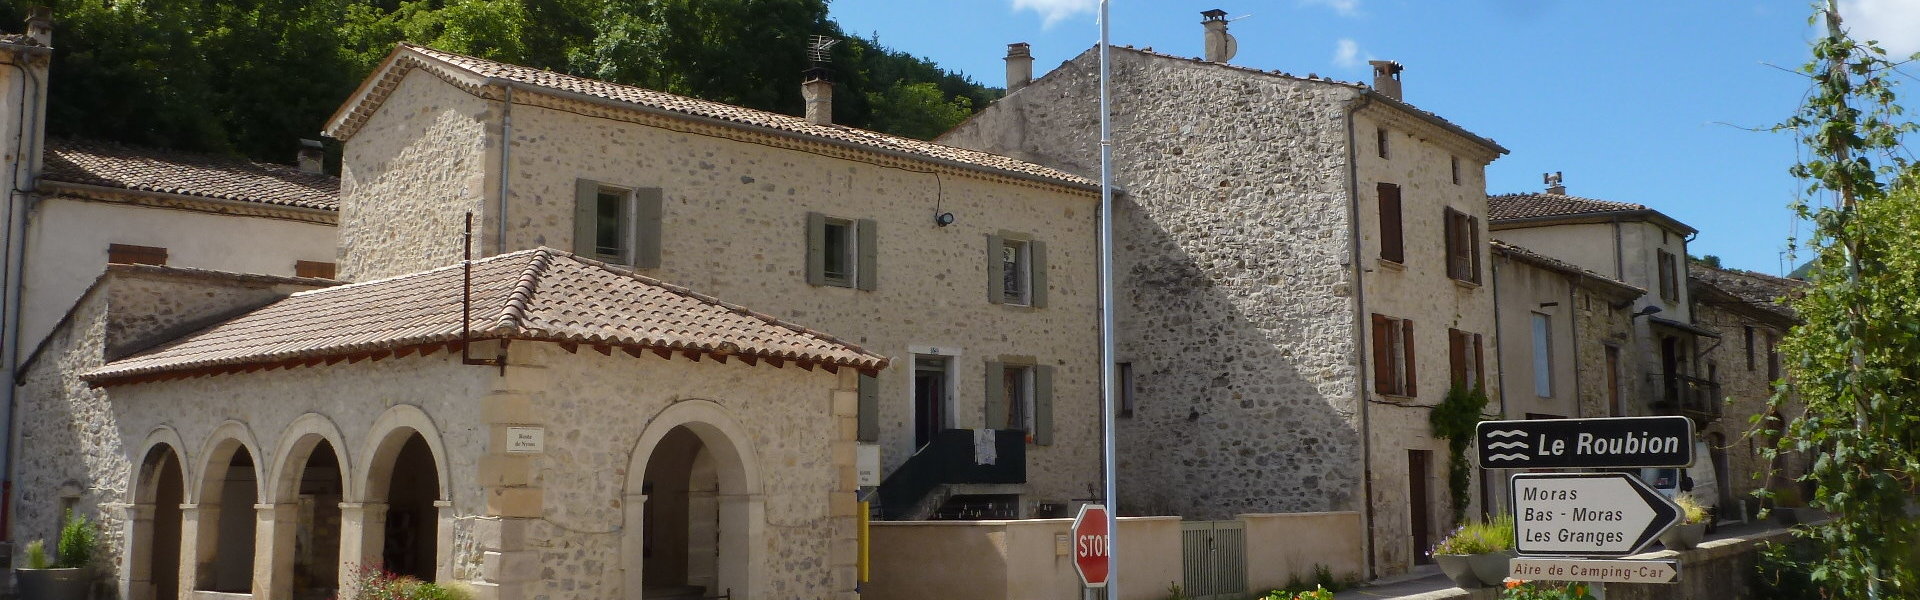 Syndicat Intercommunal de l’eau-assainissement de Dieulefit - Commune de Bouvières - Département de la Drôme